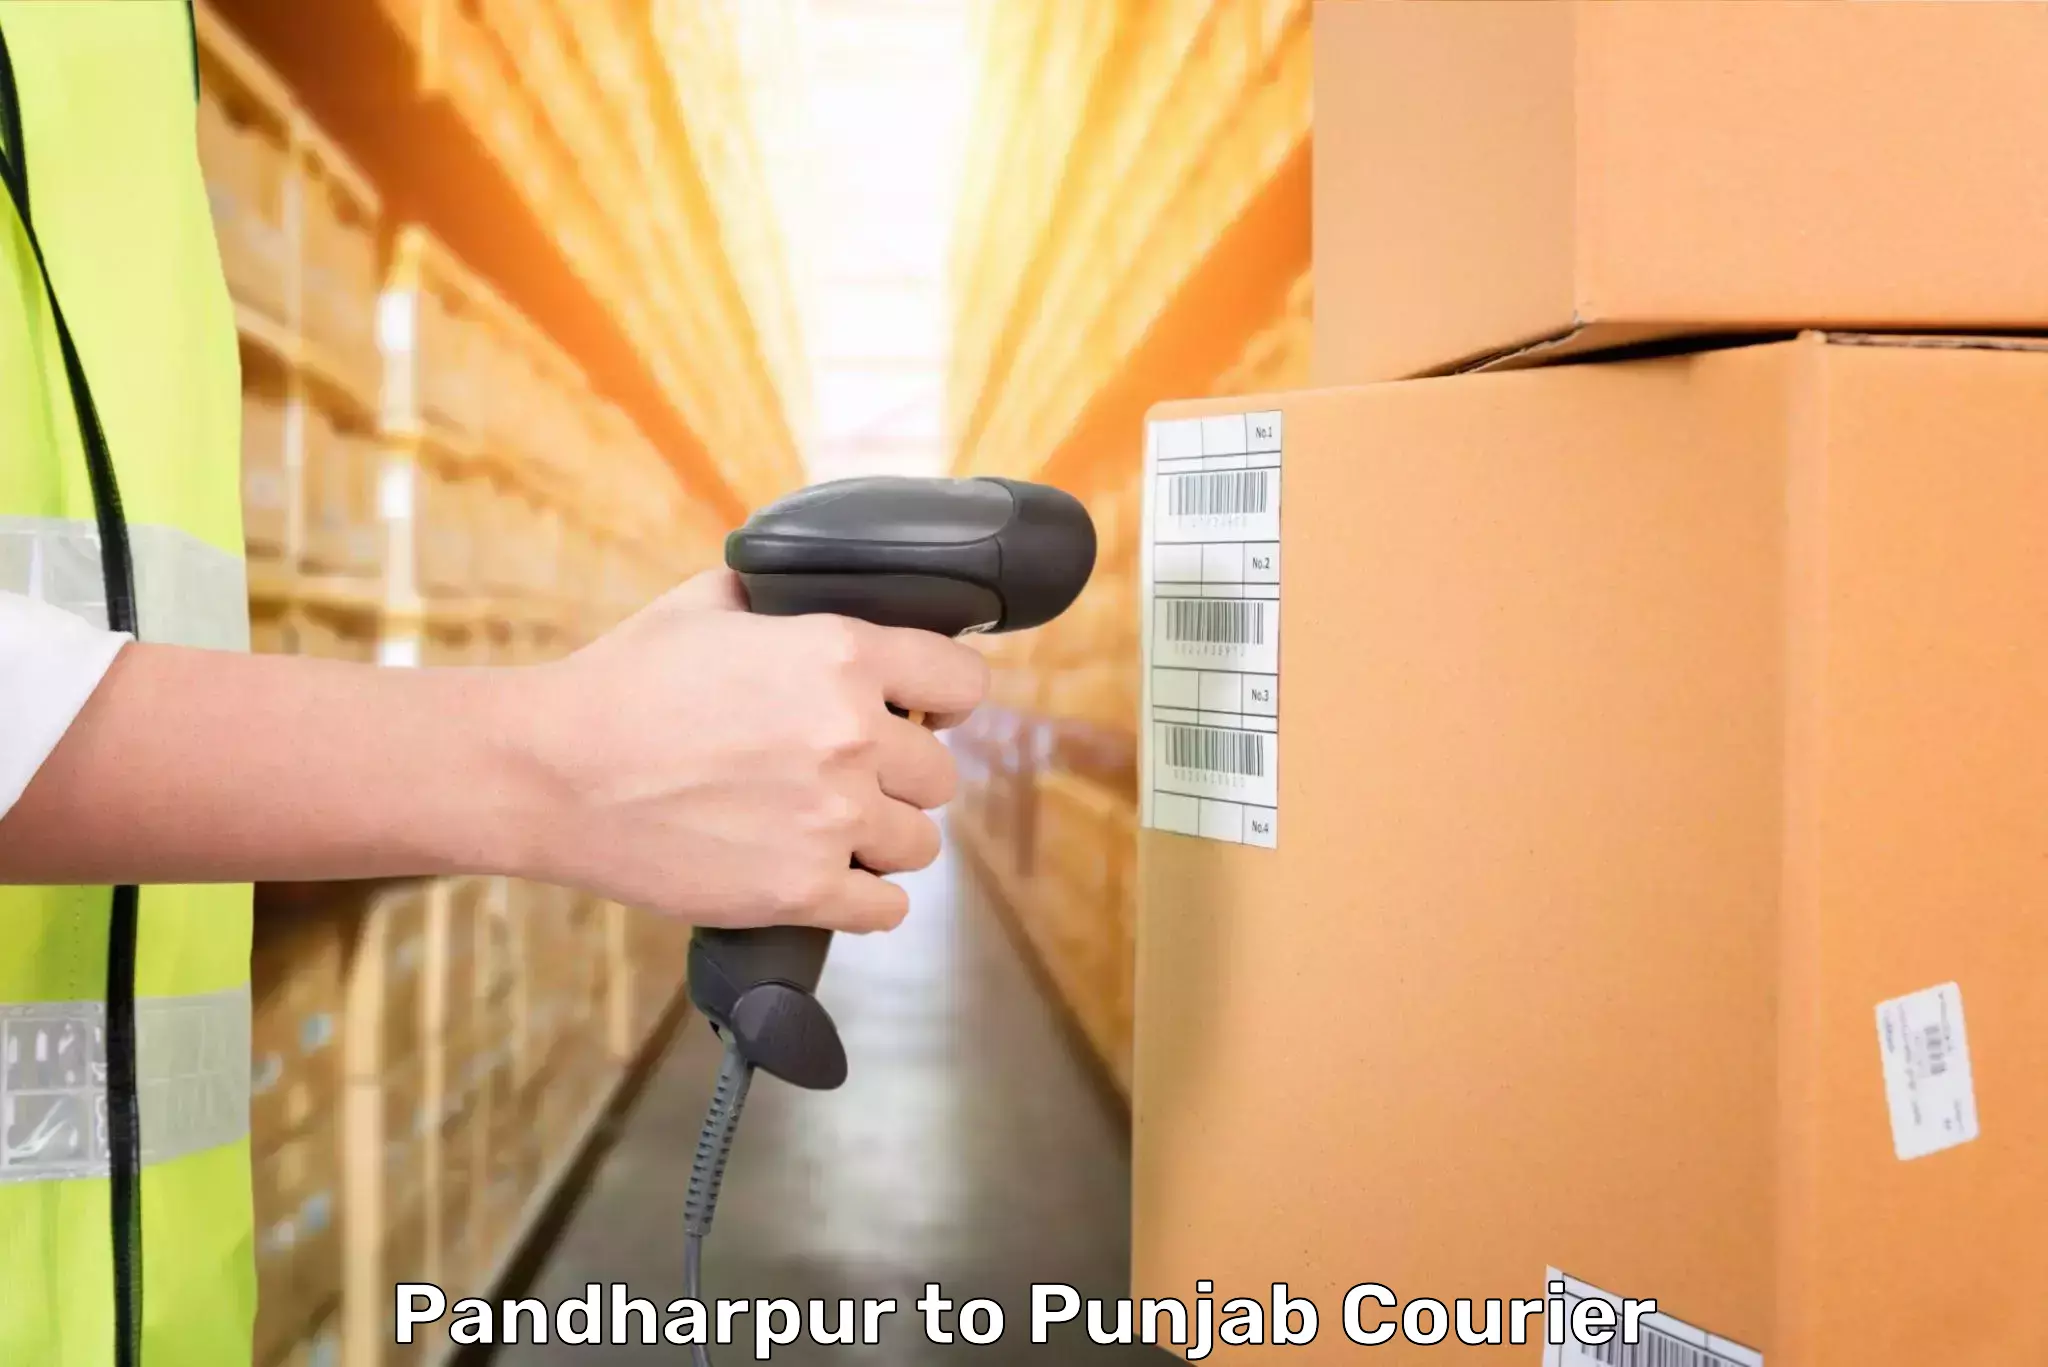 Global baggage shipping in Pandharpur to Patiala